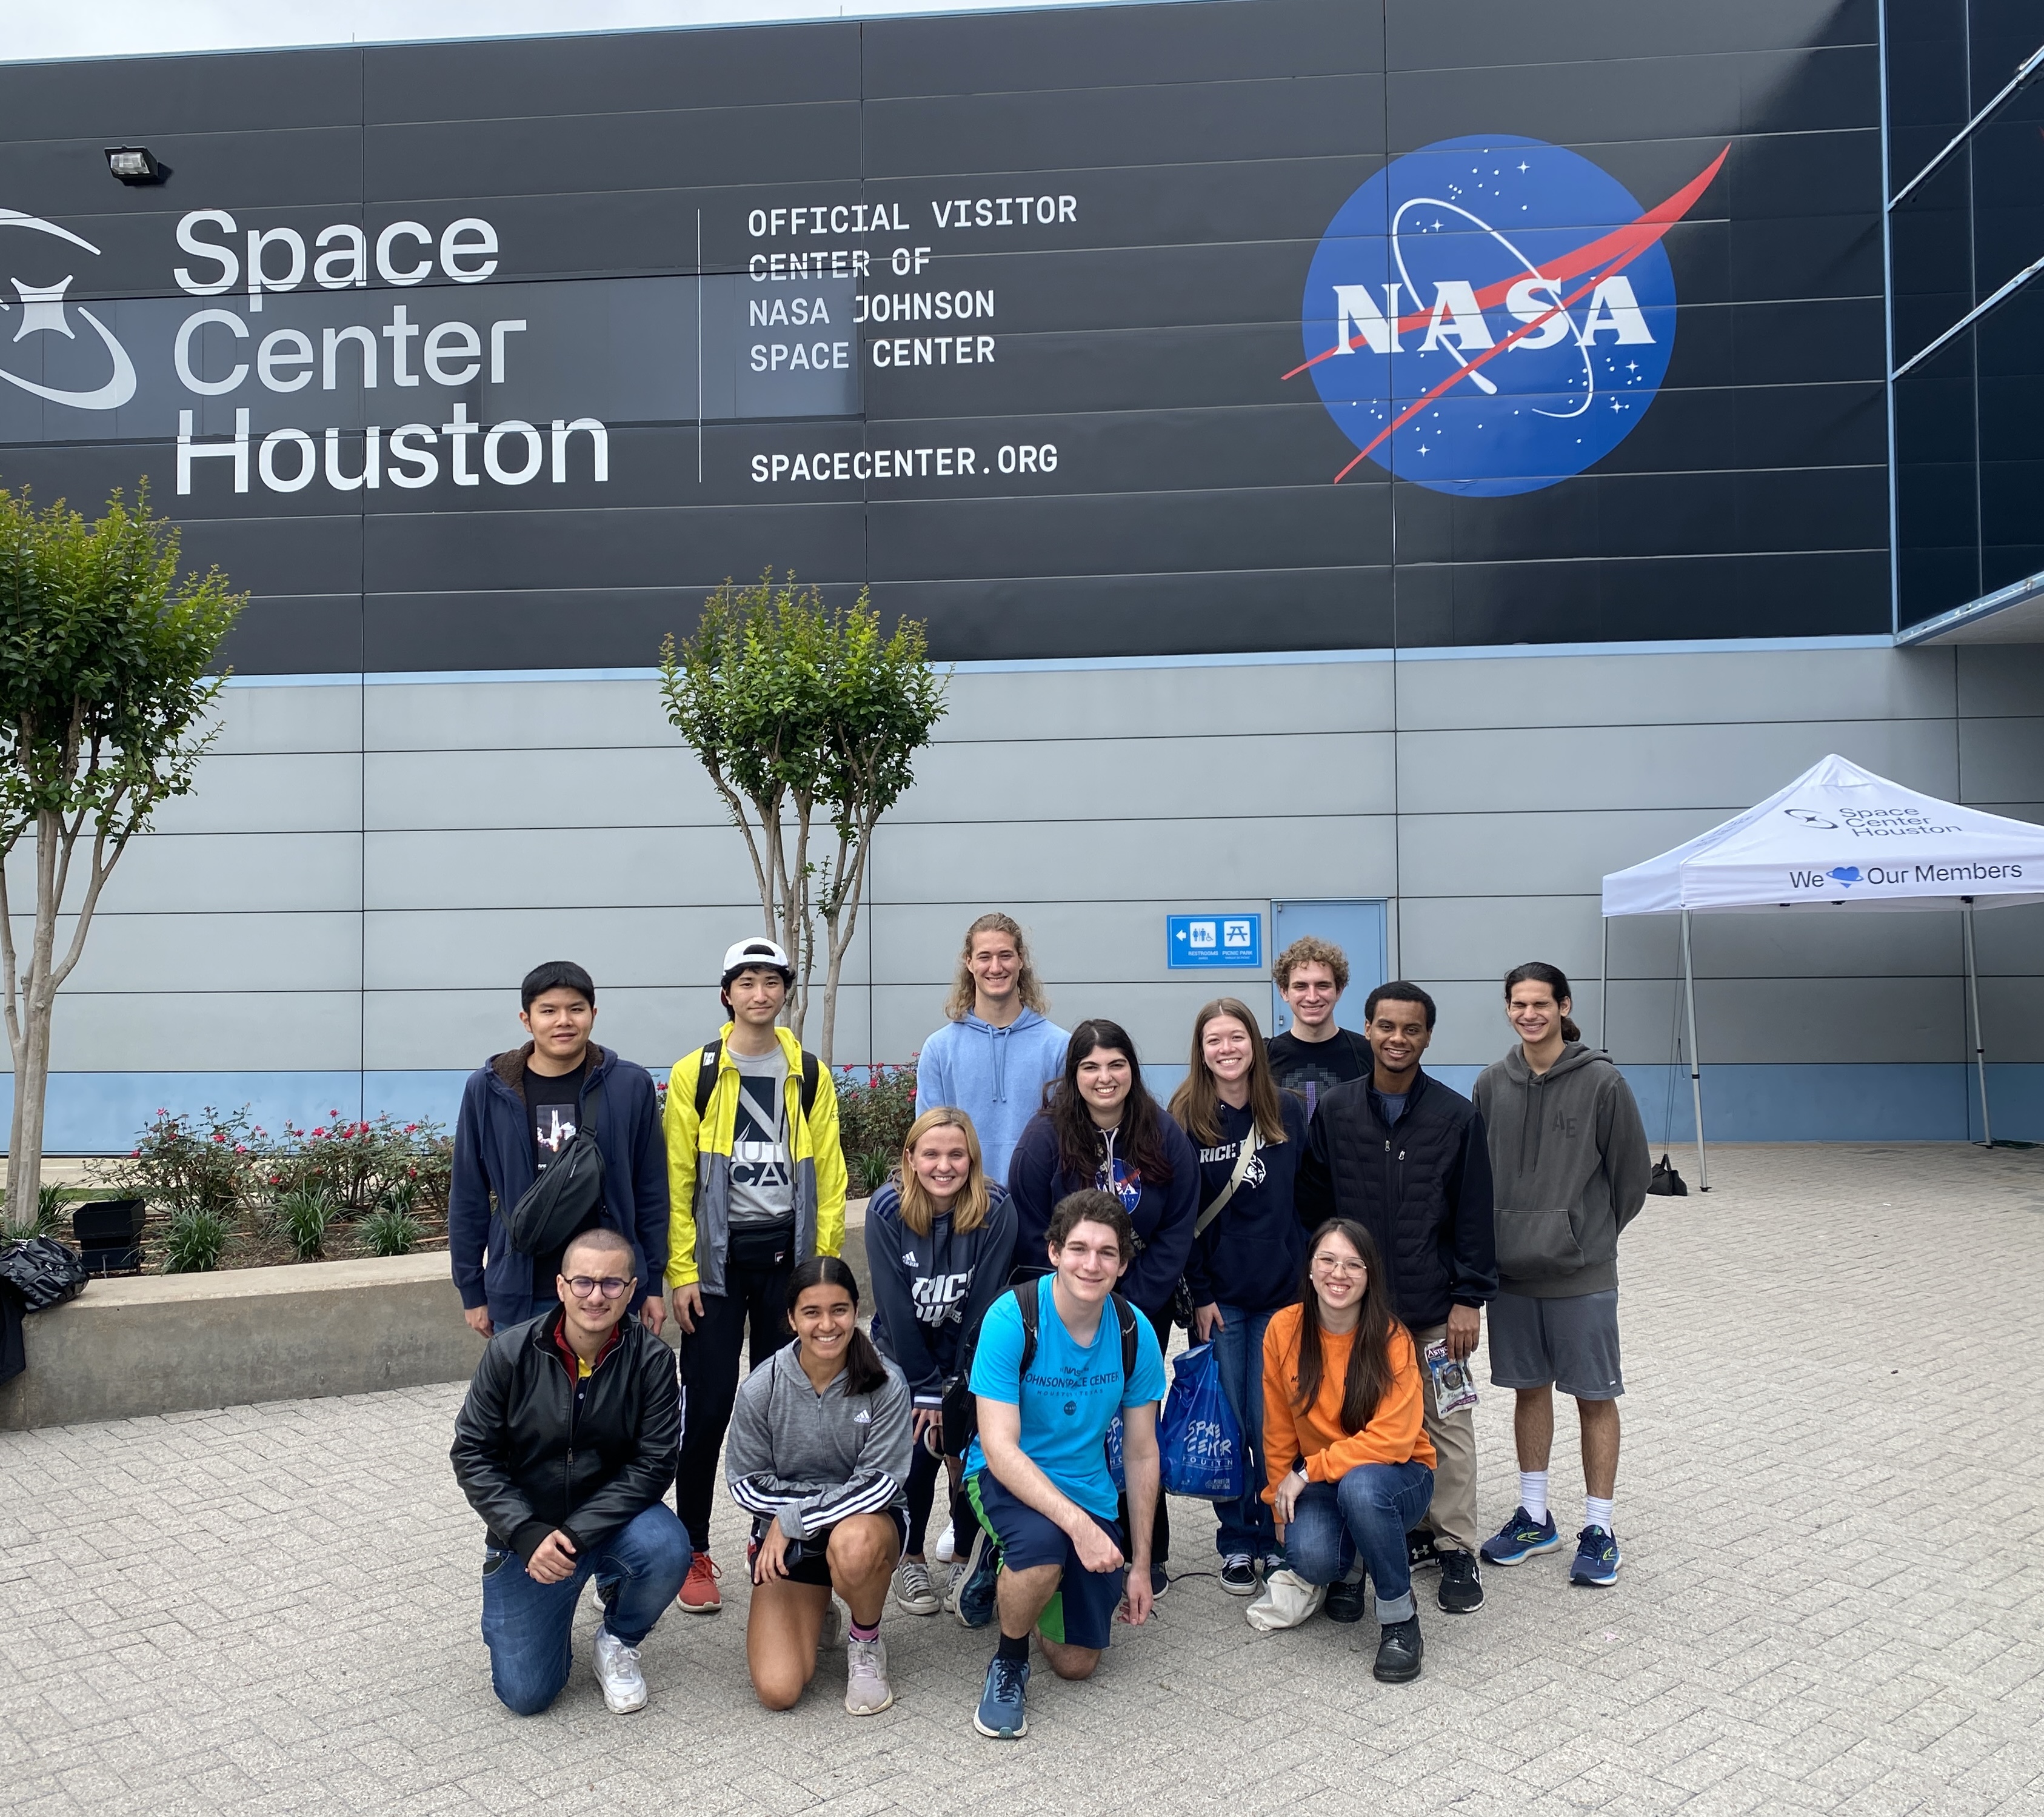 Visit to NASA - Outside the Facility